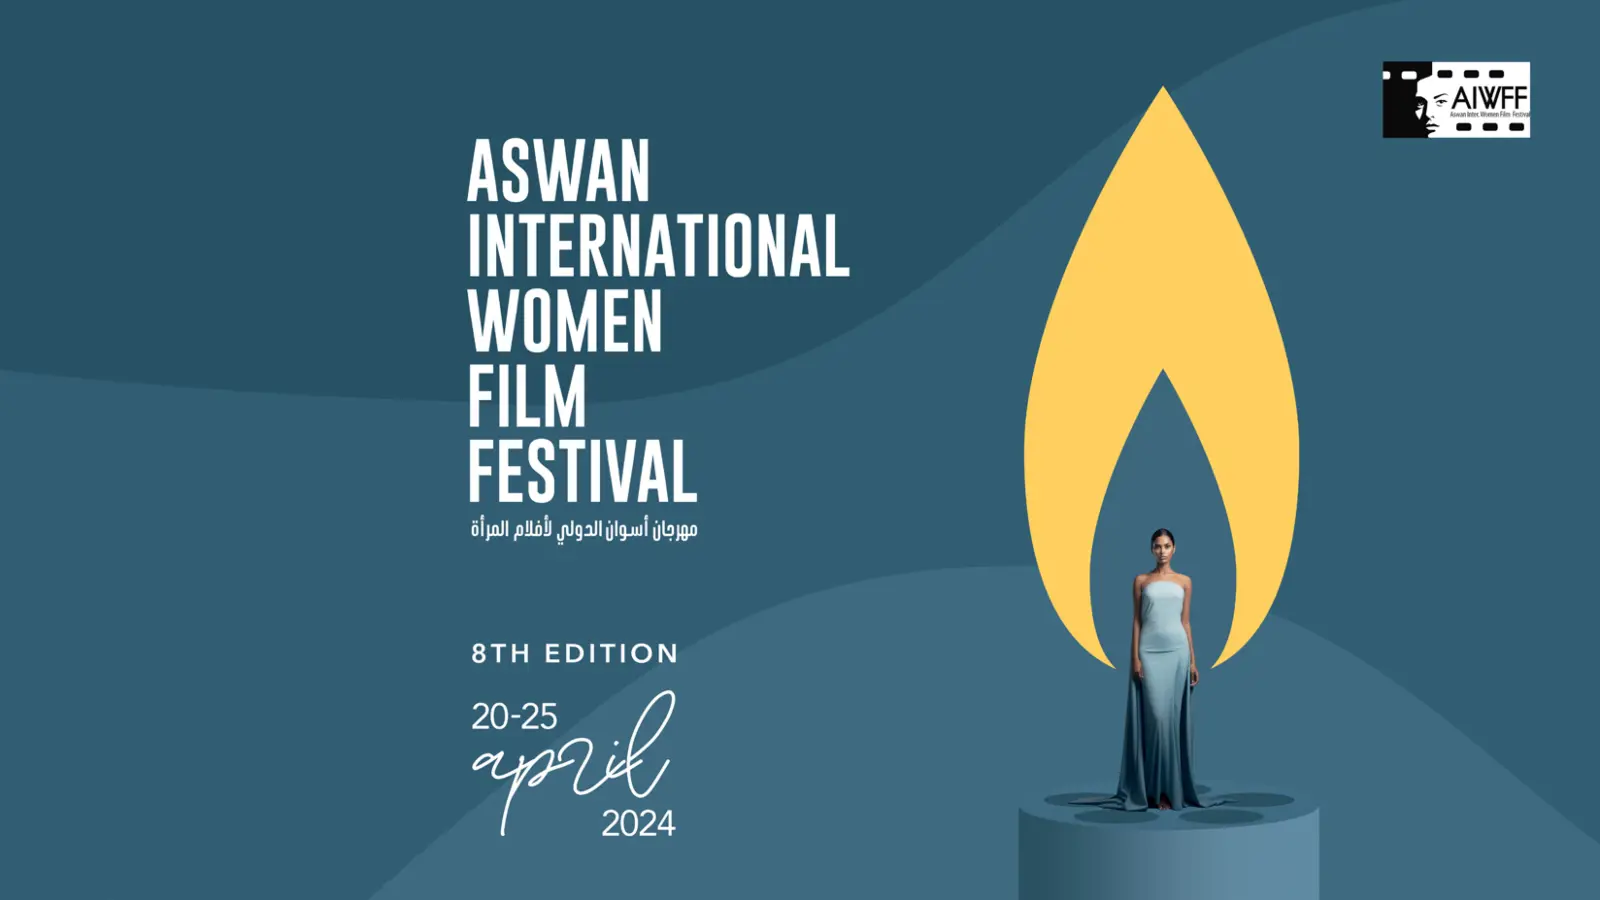 "مهرجان أسوان الدولي لسينما المرأة" يحتفي بالتجربة التونسية